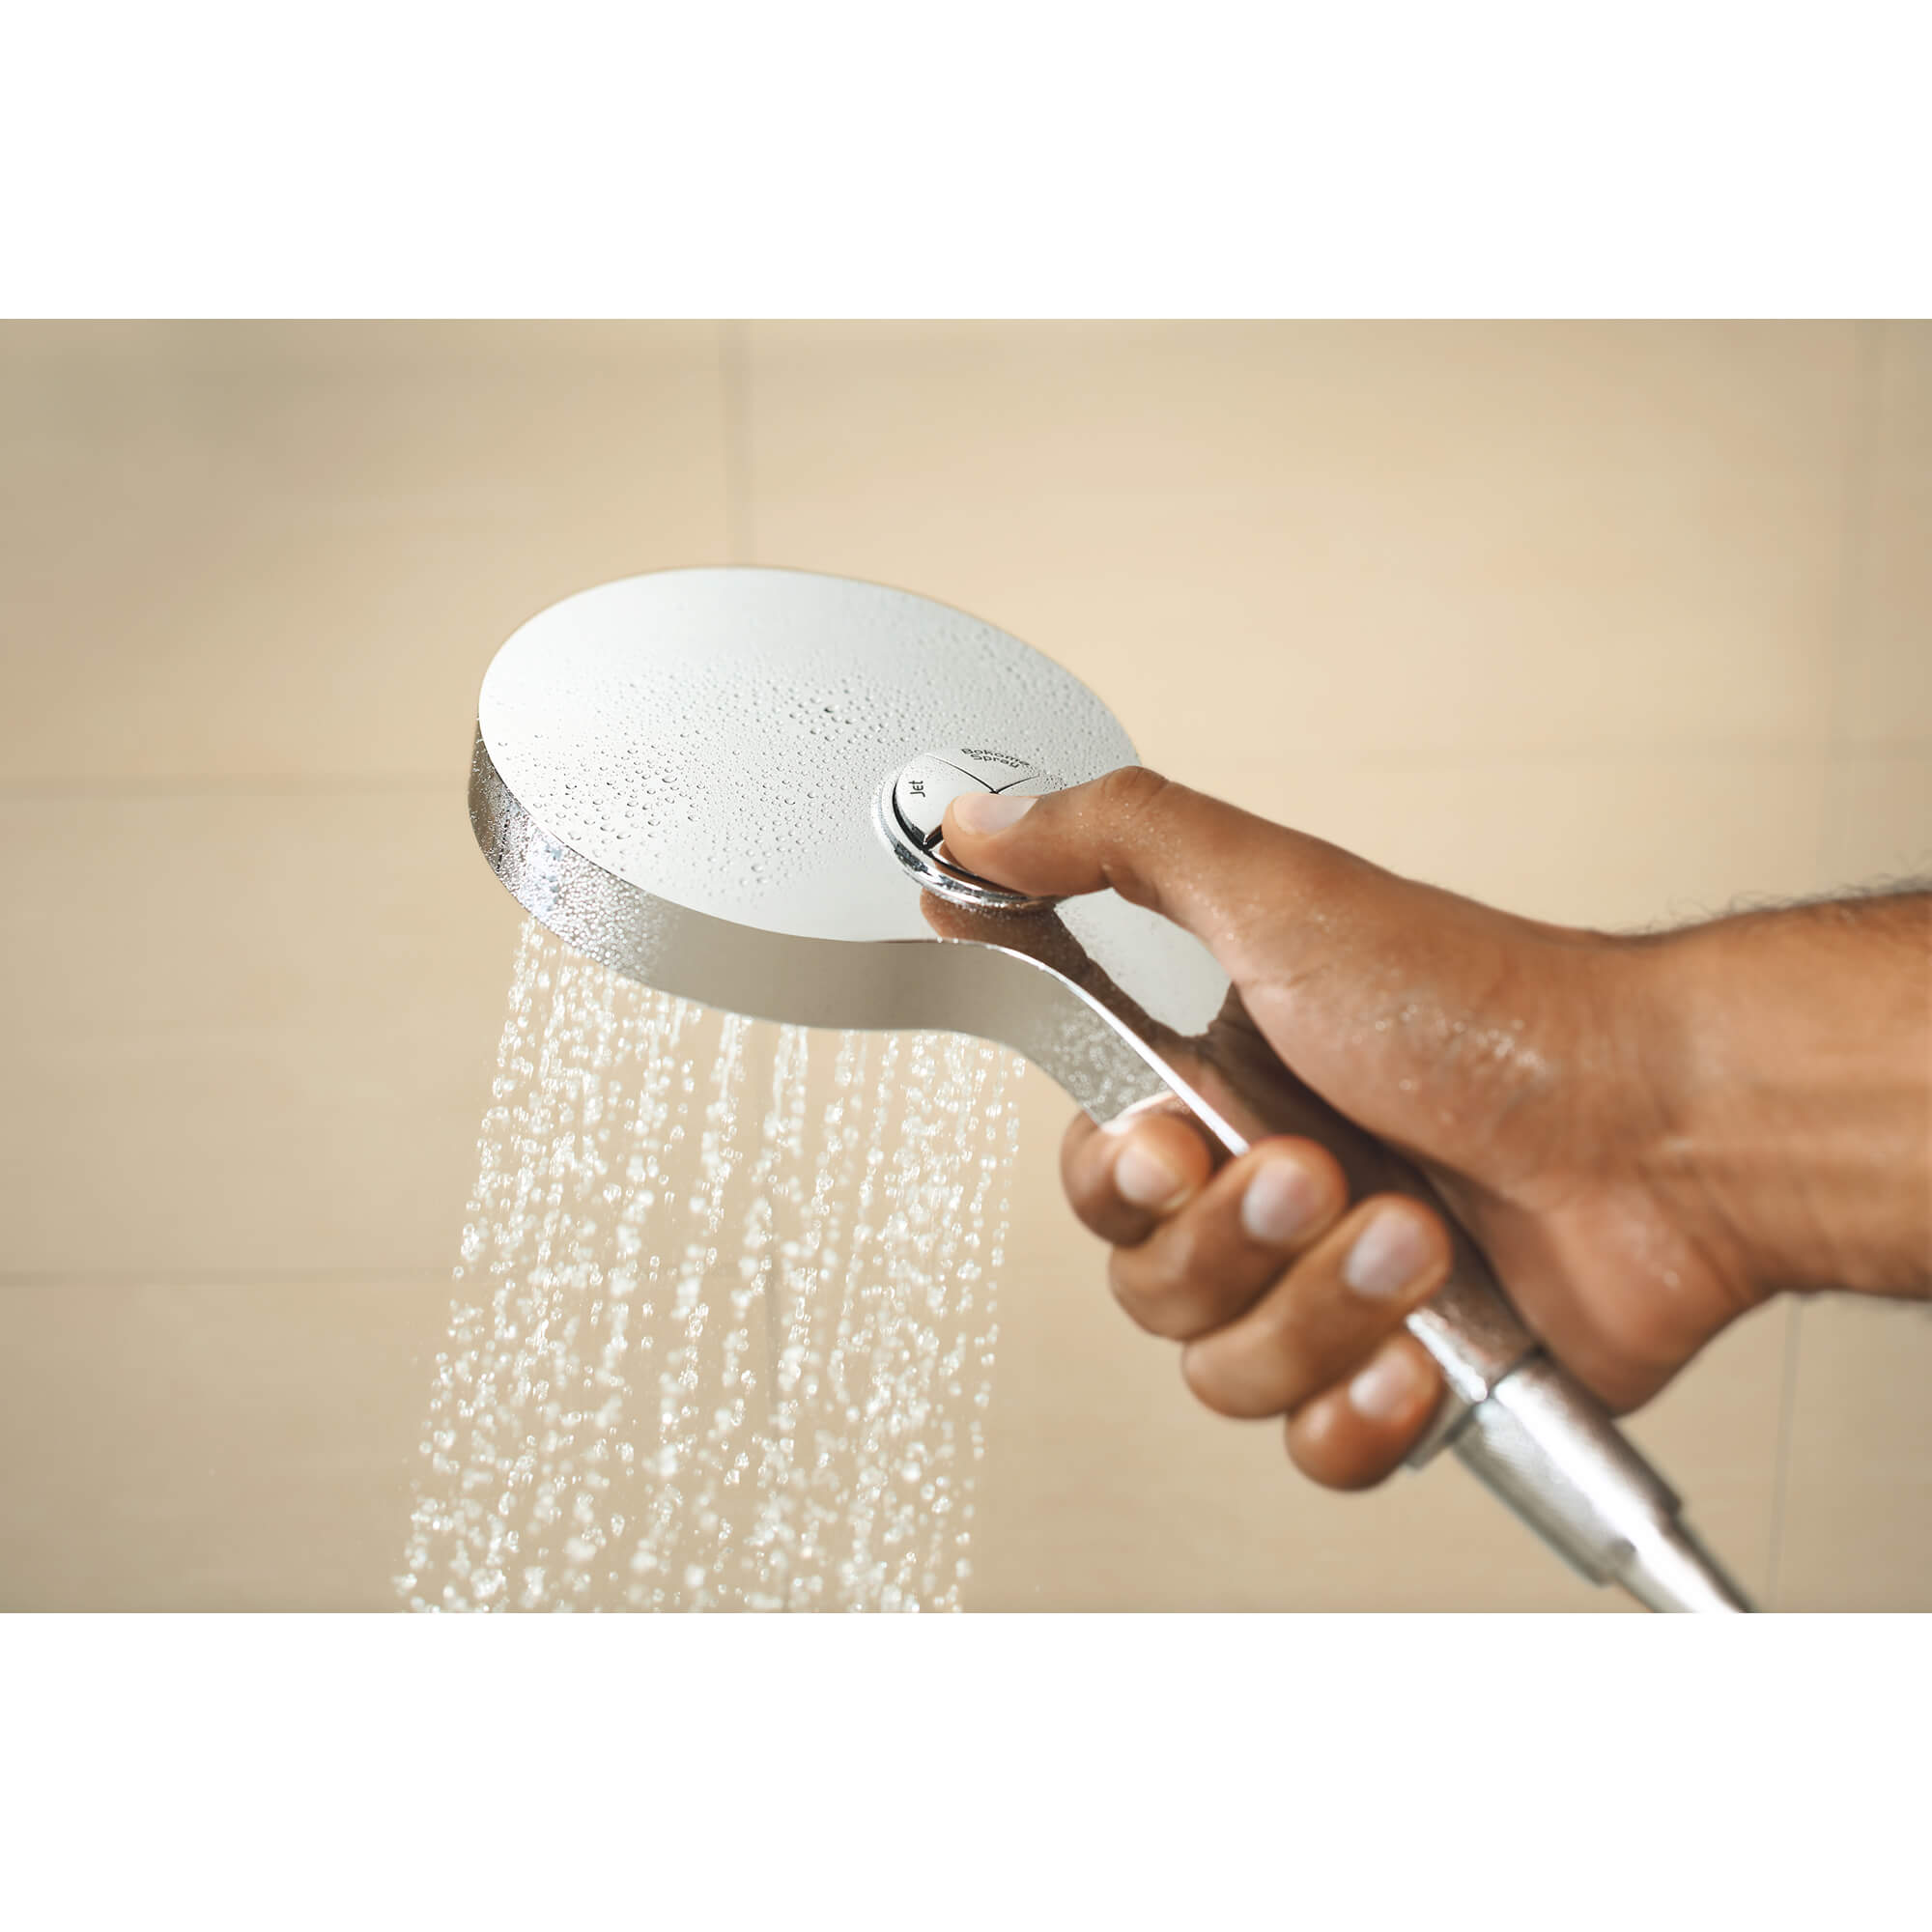 130 Hand Shower - 4 Sprays, 2.5 gpm